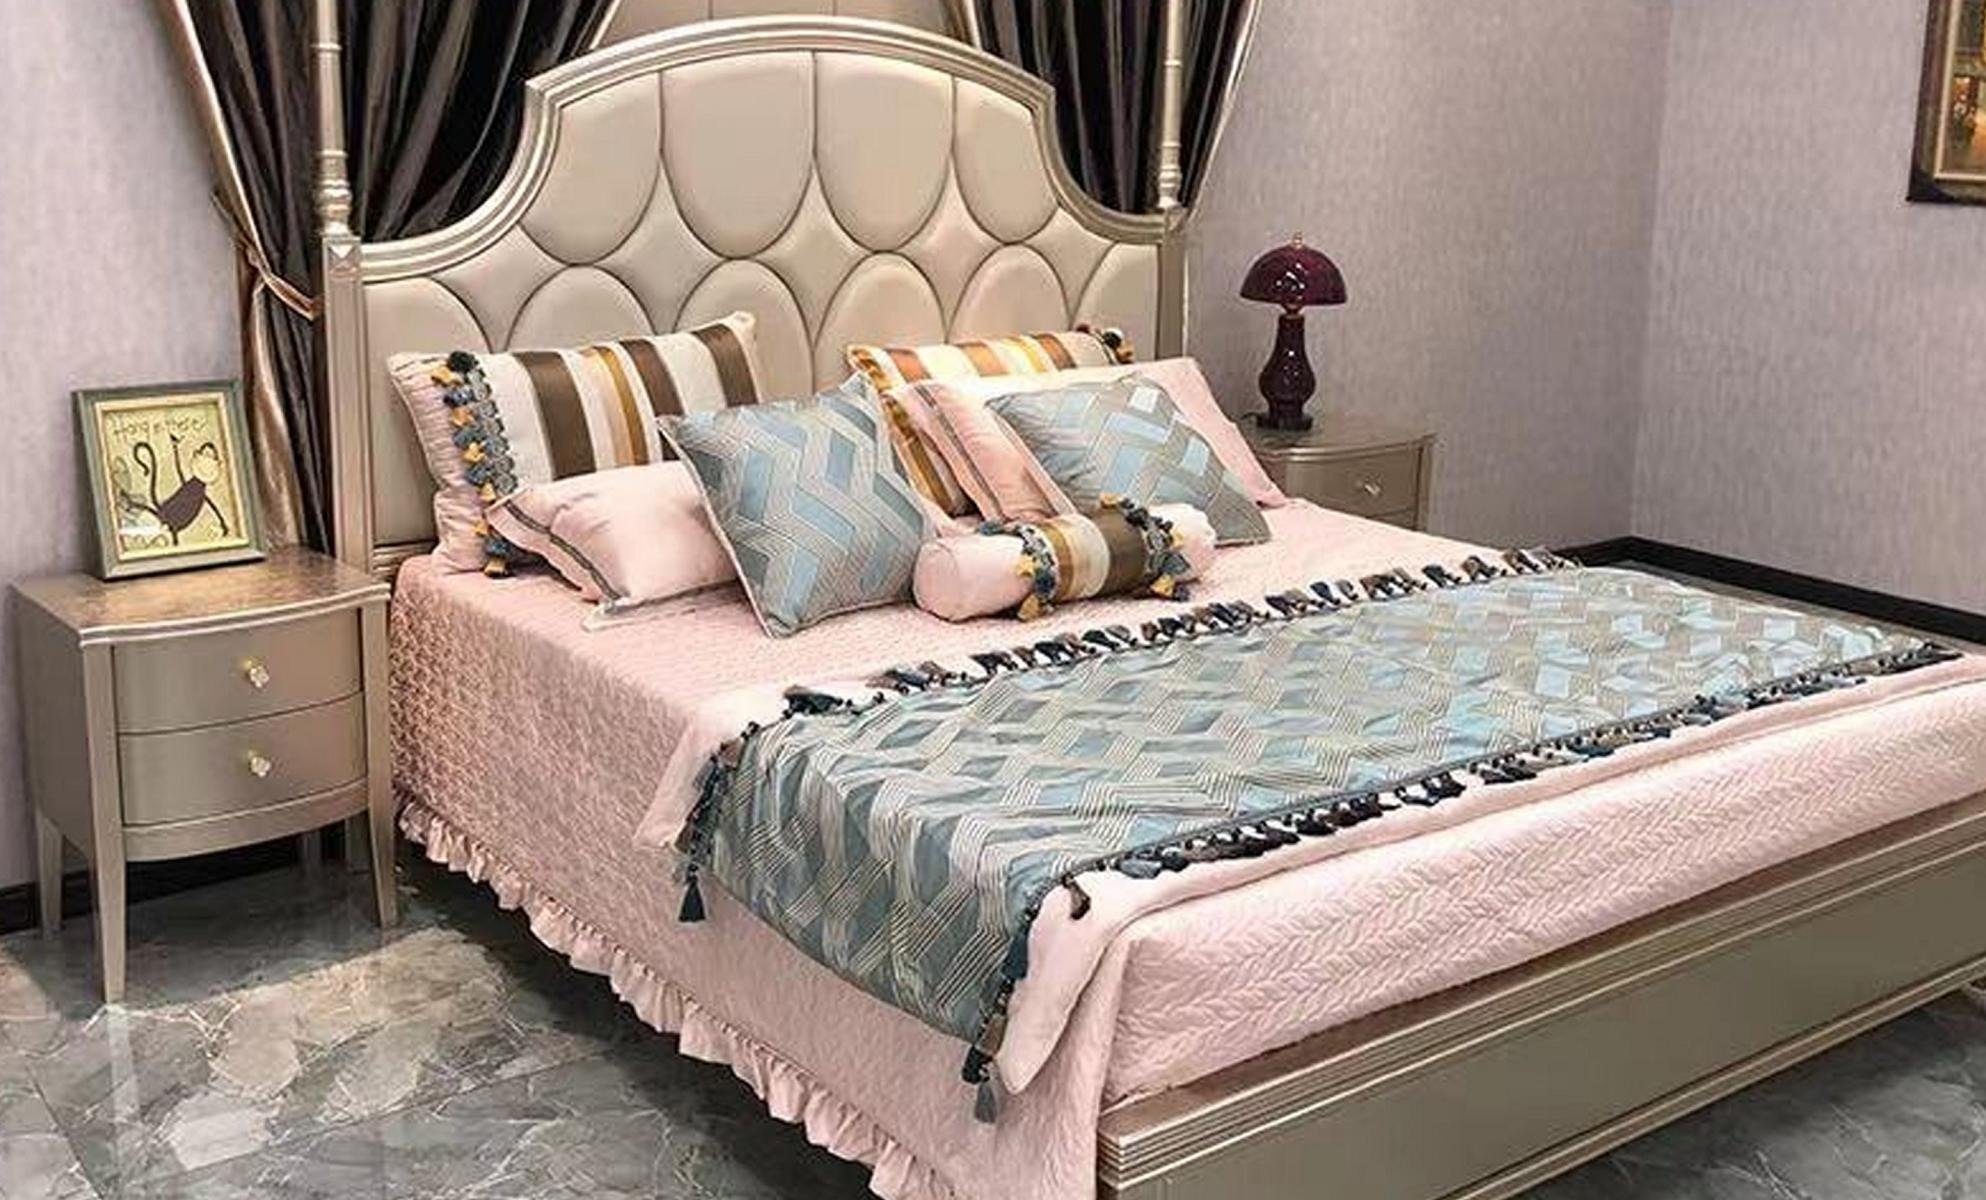 JVmoebel Bett, Doppelbett Bett Luxus Betten Holz Bettgestelle Bettrahmen Beige